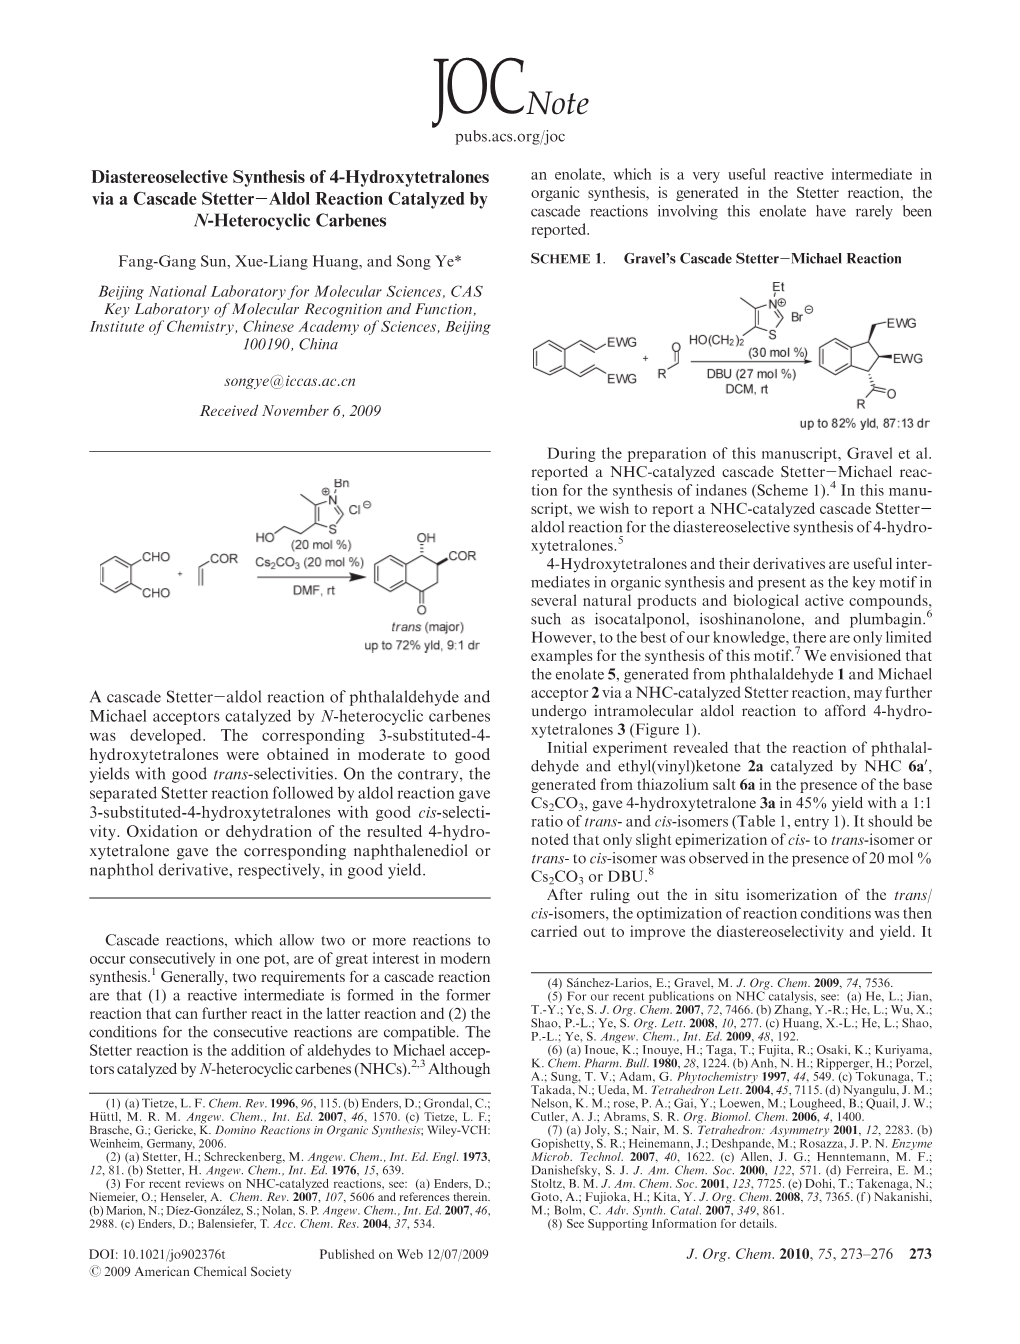 Diastereoselective Synthesis of 4-Hydroxytetralones Via a Cascade